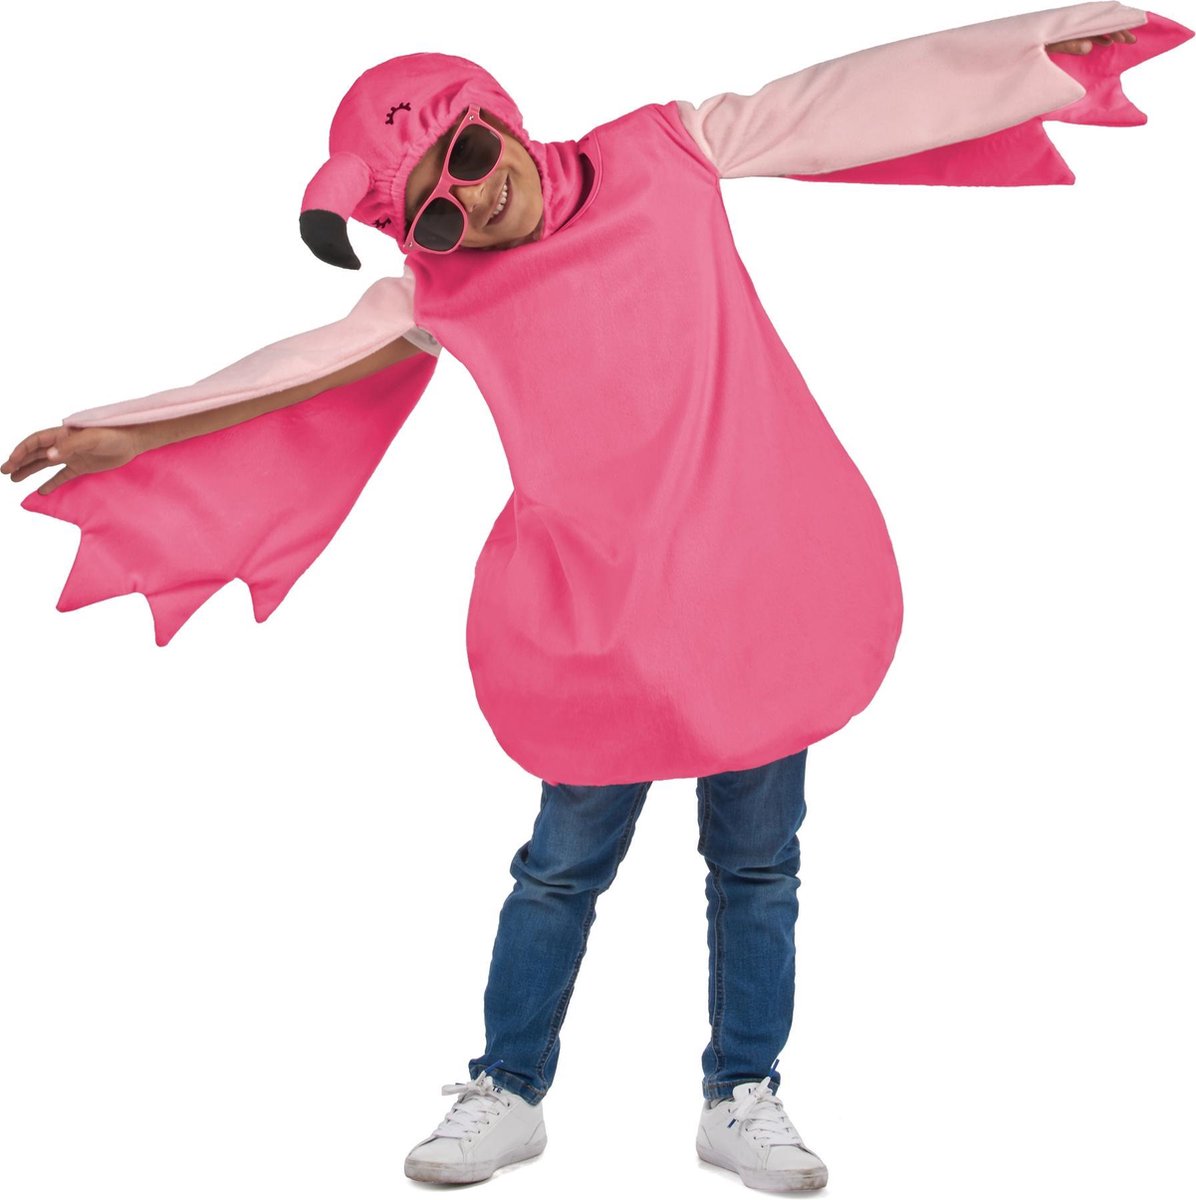 LUCIDA - Roze flamingo outfit voor meisjes - S 110/122 (4-6 jaar)